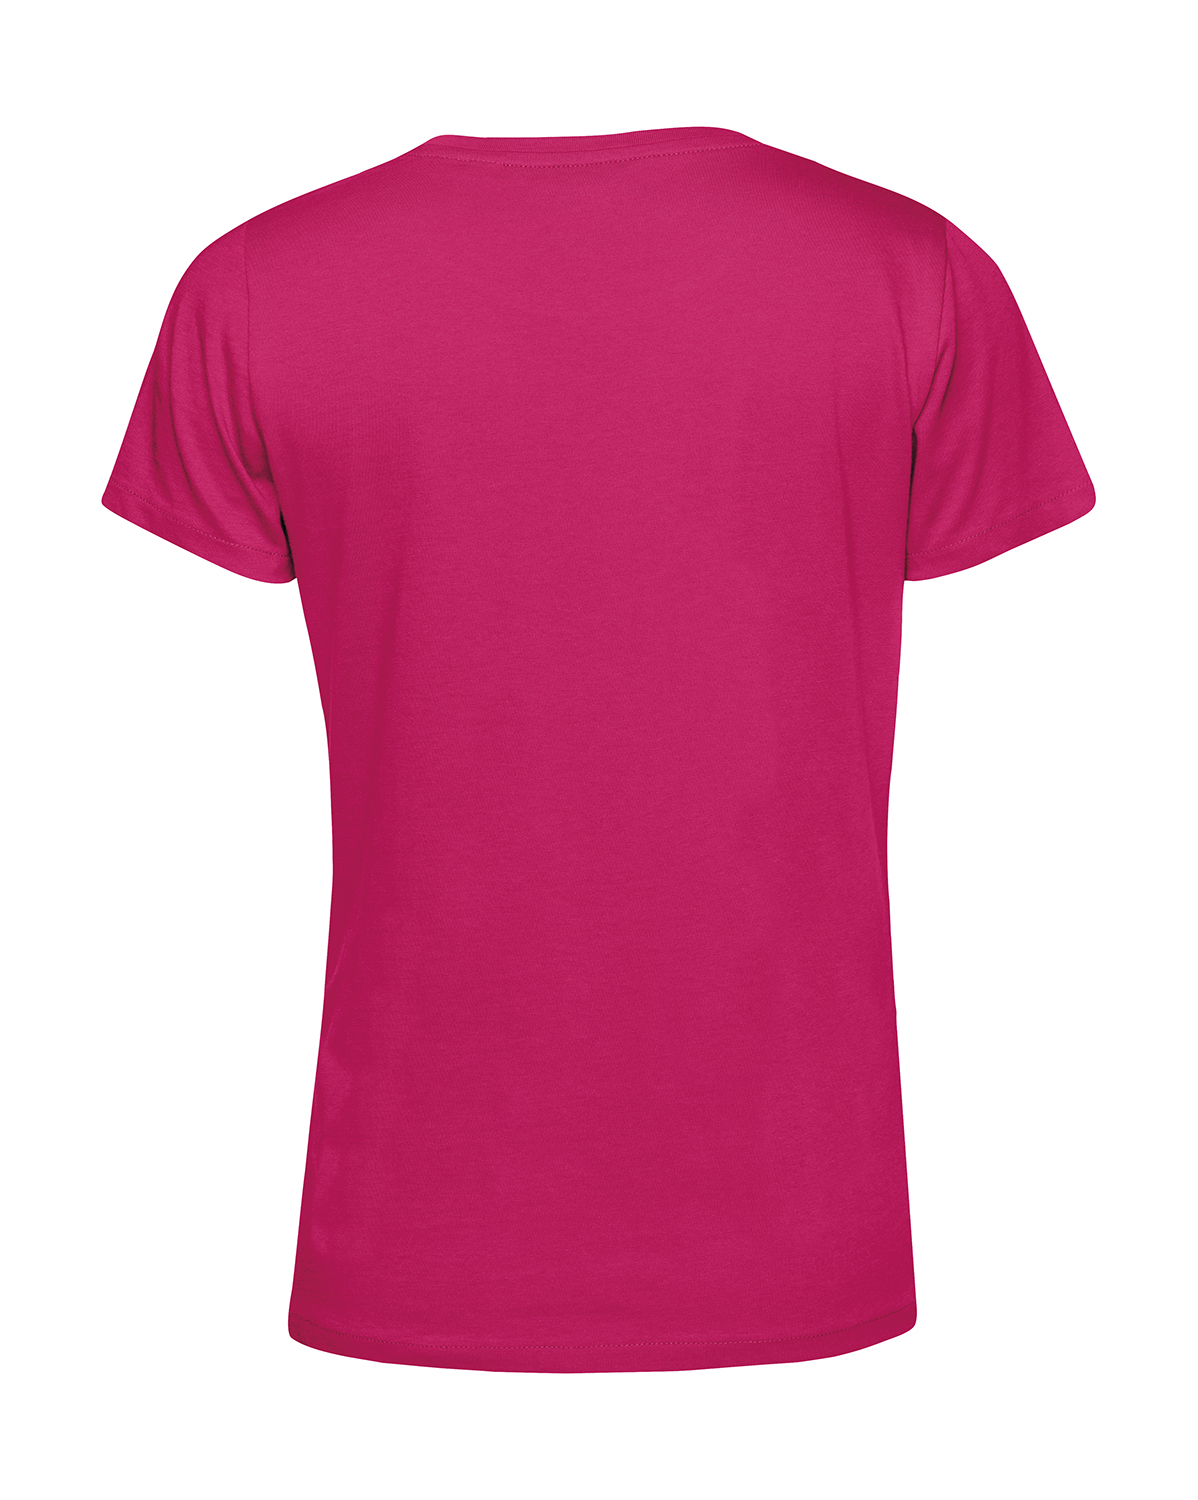 Nachhaltiges T-Shirt Damen 2Takt - Wenn Du keine besitzt SR2